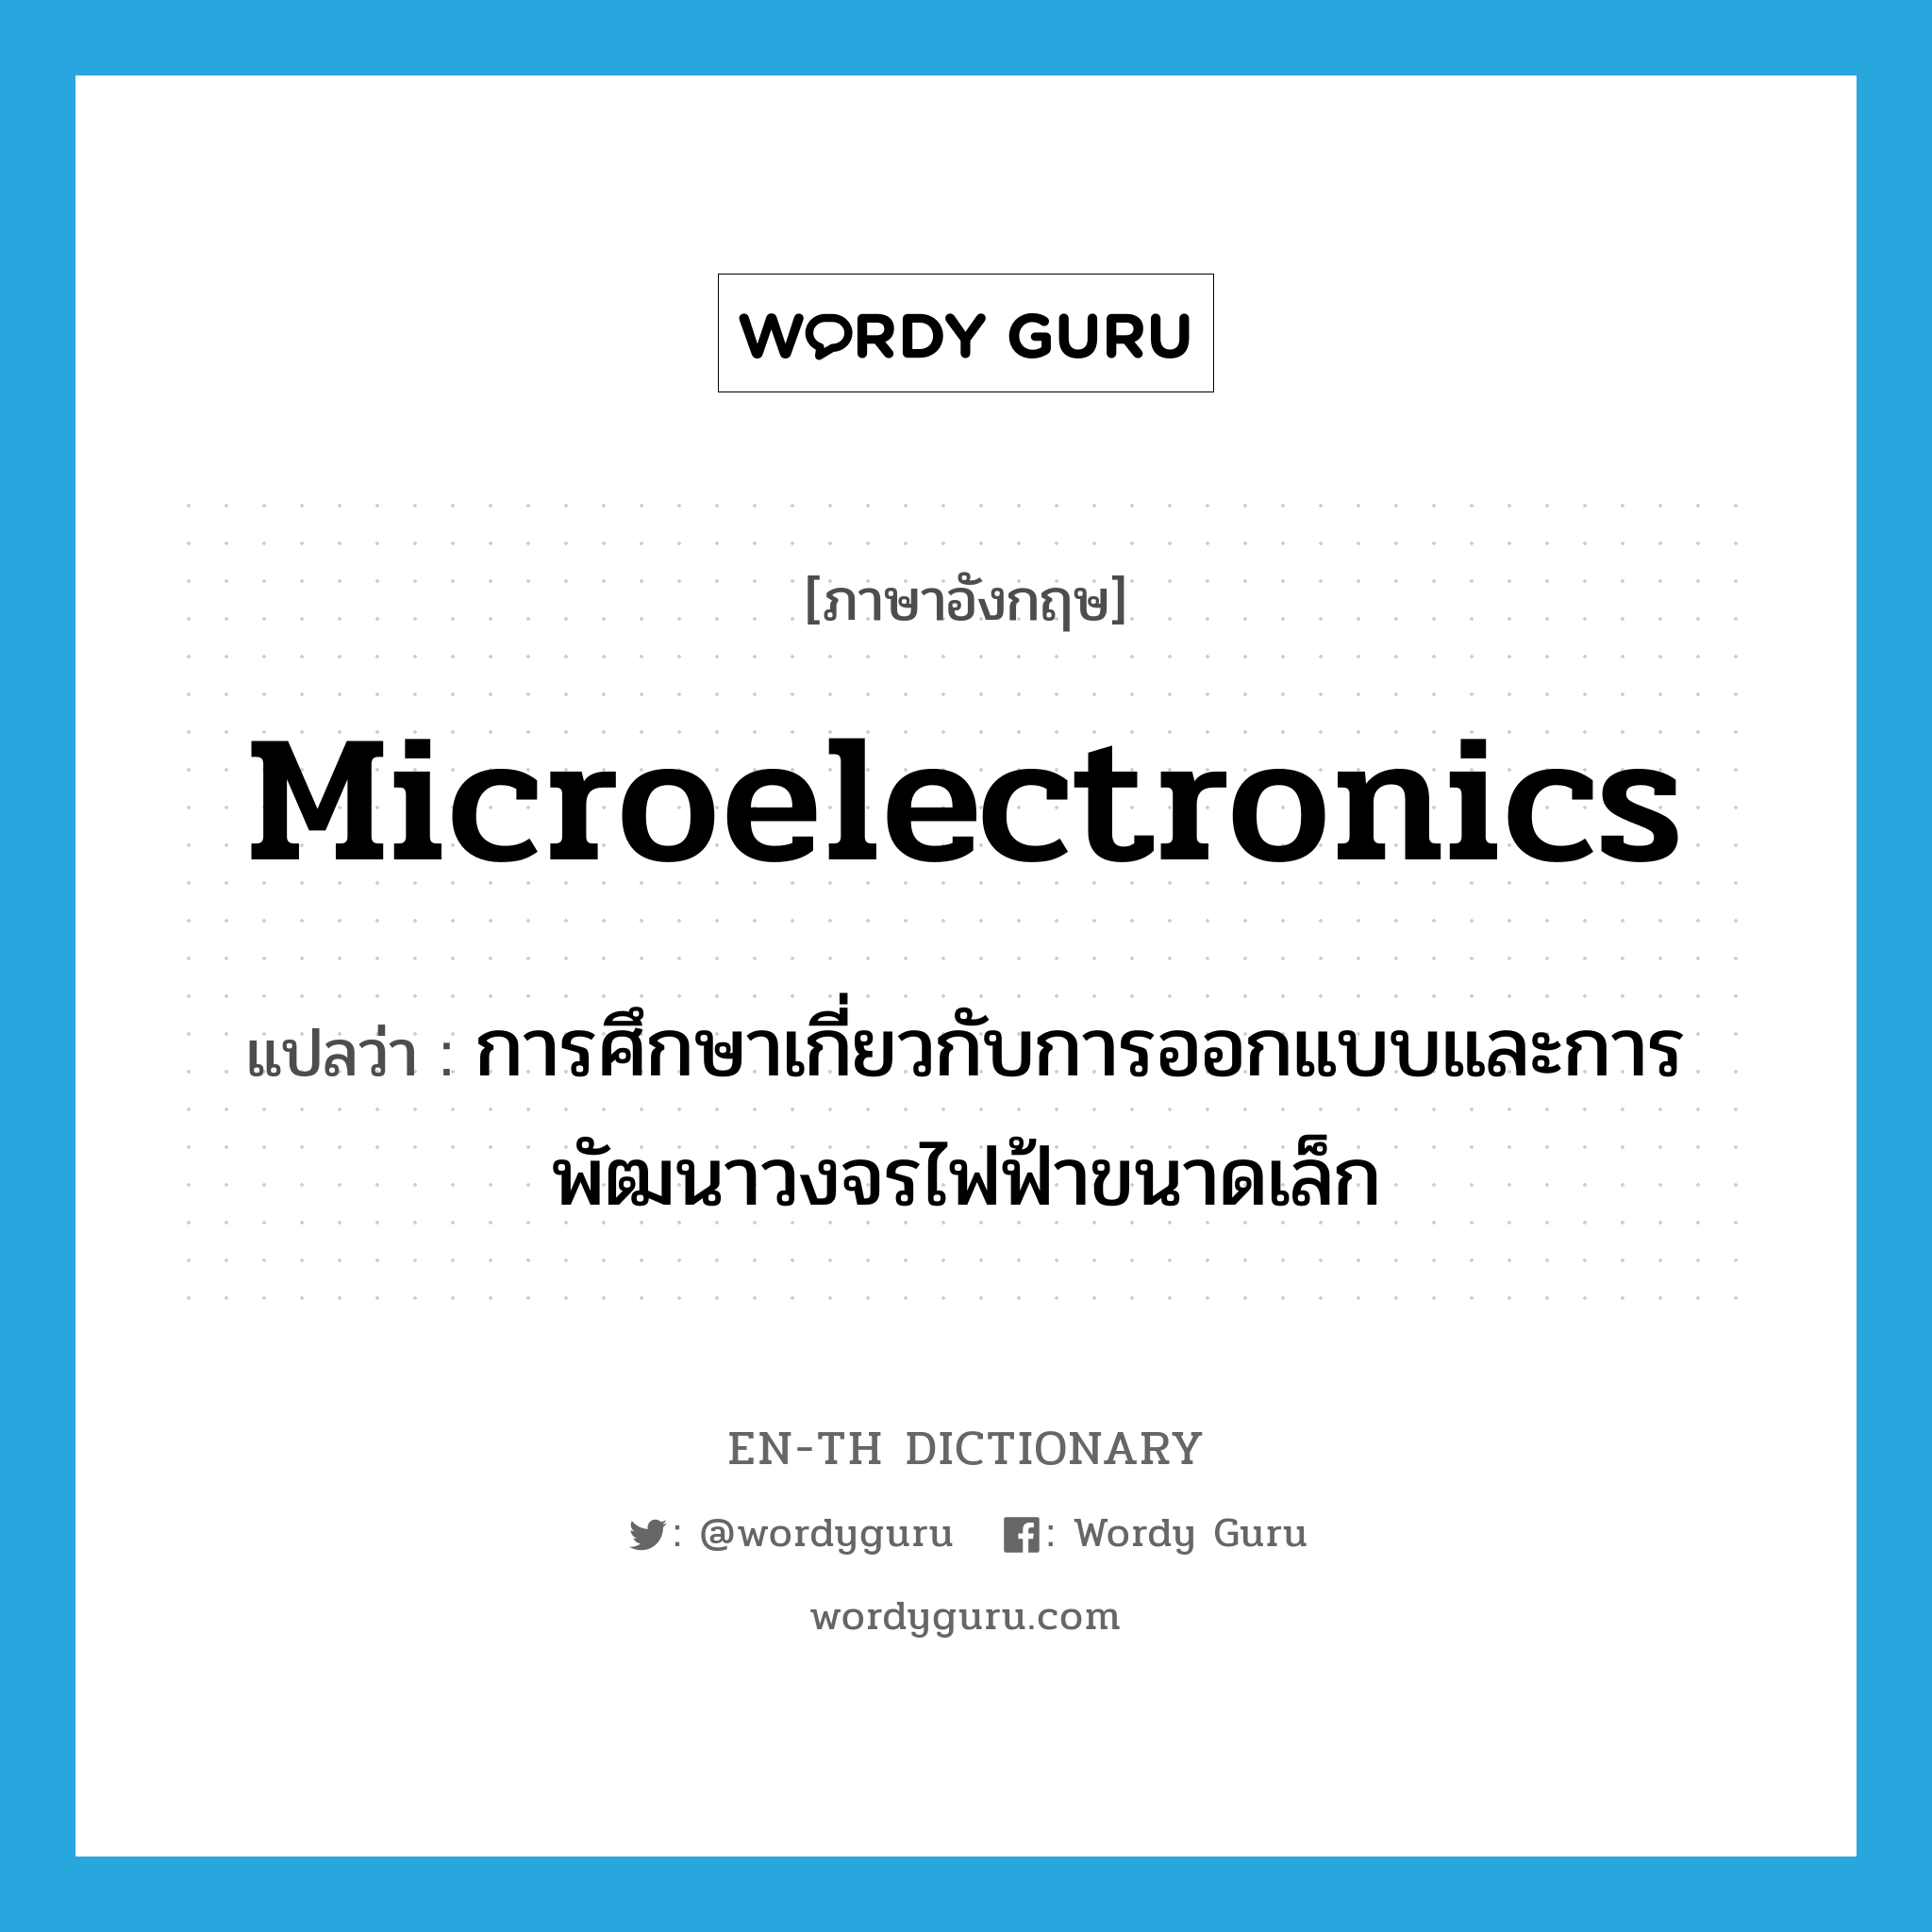 การศึกษาเกี่ยวกับการออกแบบและการพัฒนาวงจรไฟฟ้าขนาดเล็ก ภาษาอังกฤษ?, คำศัพท์ภาษาอังกฤษ การศึกษาเกี่ยวกับการออกแบบและการพัฒนาวงจรไฟฟ้าขนาดเล็ก แปลว่า microelectronics ประเภท N หมวด N